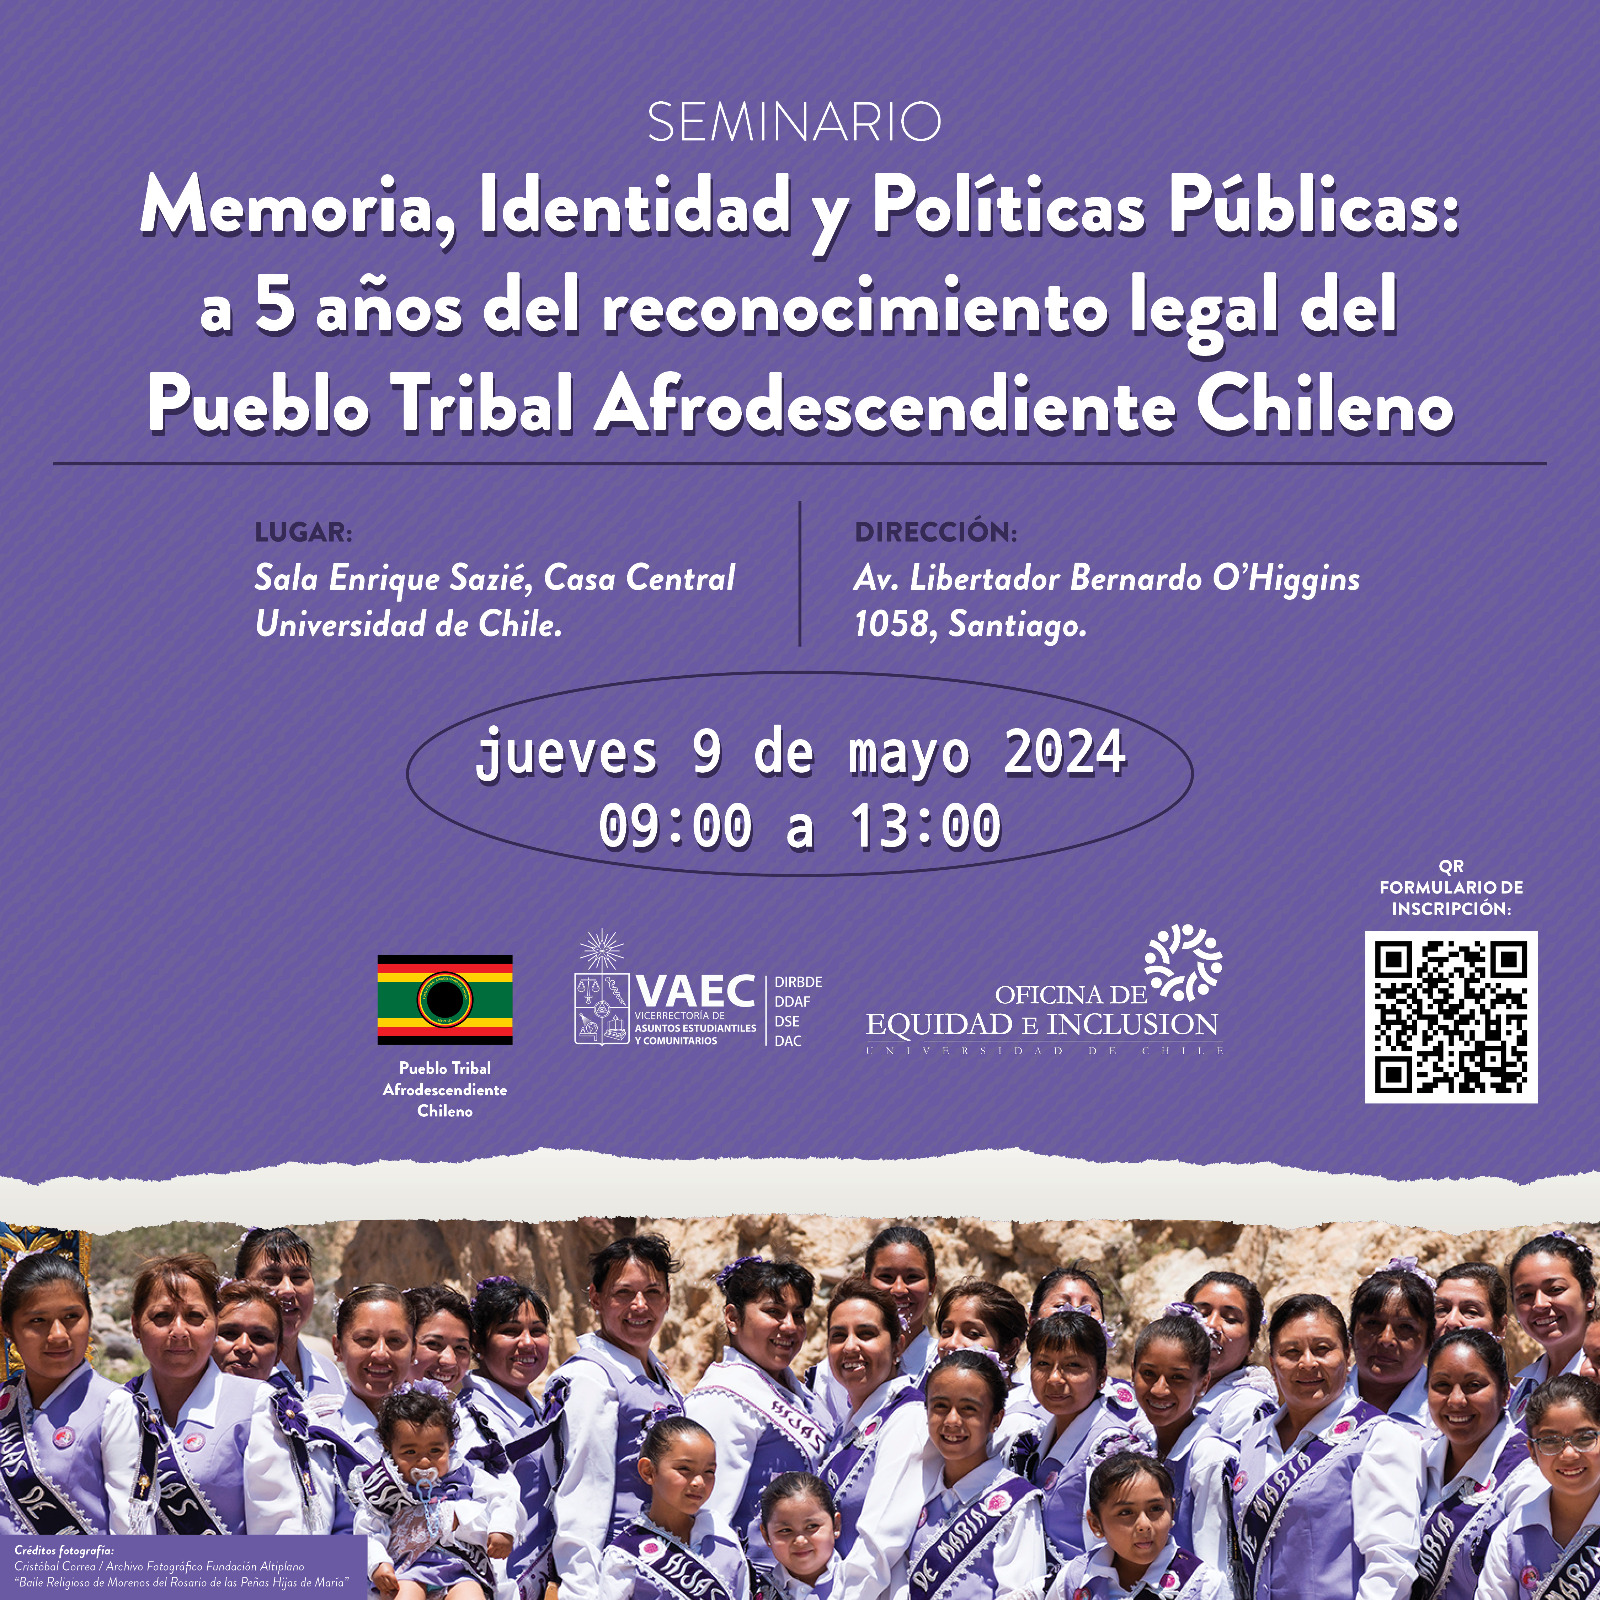 Seminario: Memoria, Identidad y Políticas Públicas: a 5 años del reconocimiento legal del Pueblo Tribal Afrodescendiente Chileno